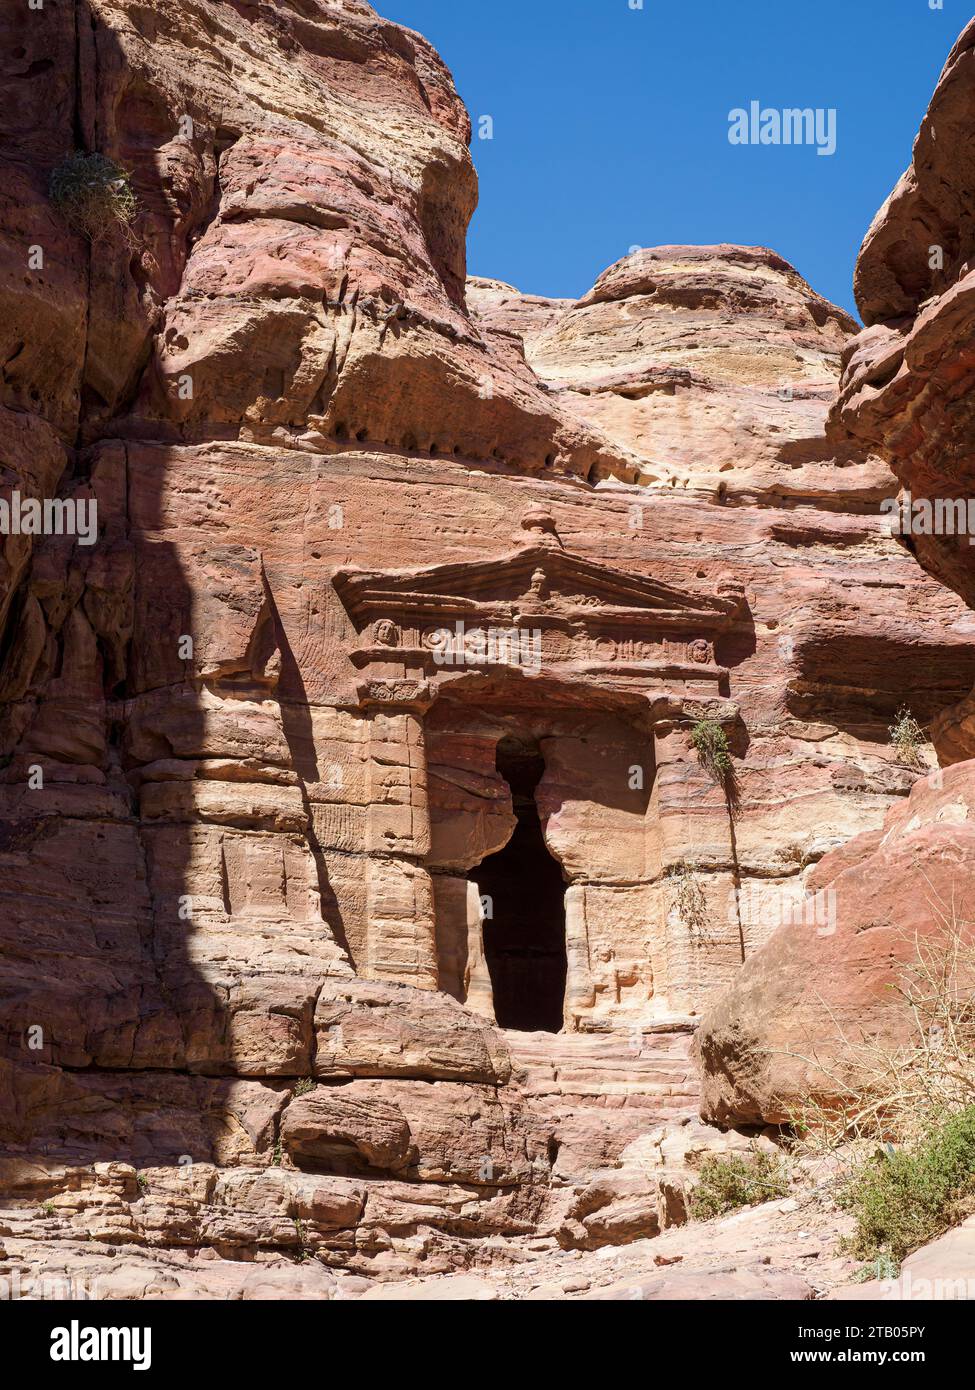 Temple des Lions ailés, Parc archéologique de Petra, site classé au patrimoine mondial de l'UNESCO, 7 nouvelles merveilles du monde, Jordanie. Banque D'Images